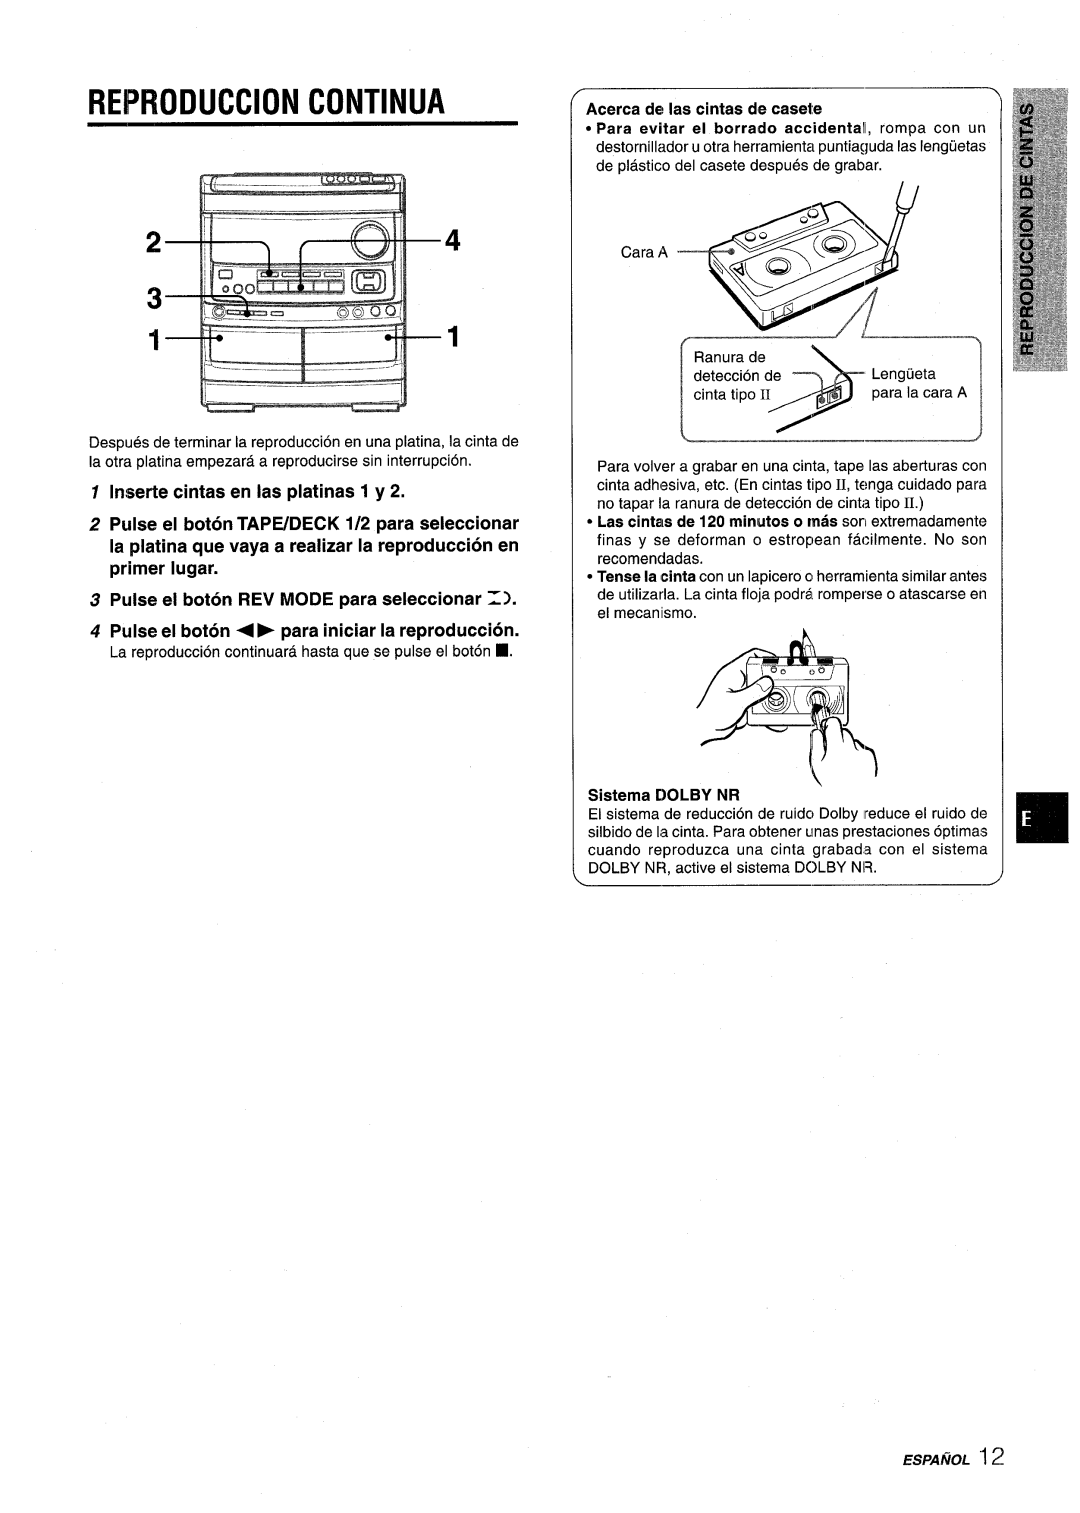 Aiwa NSX-V9000 Reproduction Continua, Inserte cintas en Ias platinas 1 y, Pulse el boton REV MODE para seleccionar =1 